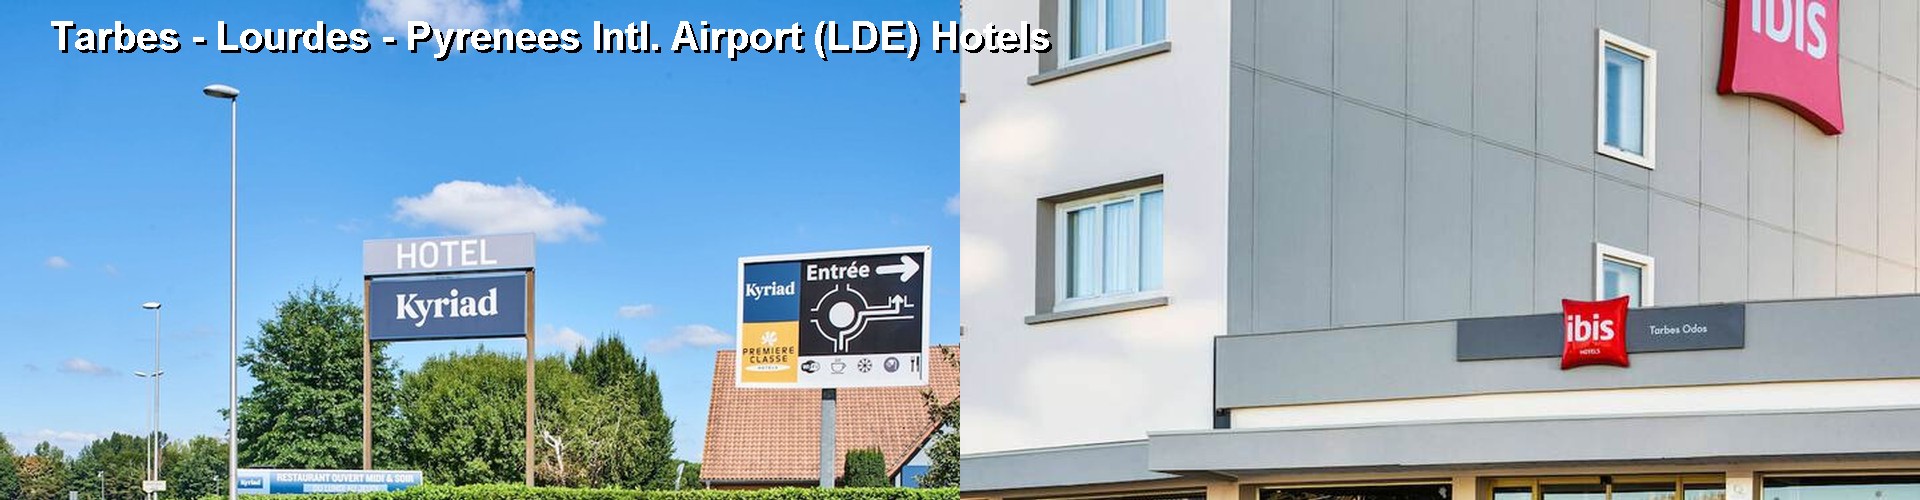 5 Best Hotels near Tarbes - Lourdes - Pyrenees Intl. Airport (LDE)